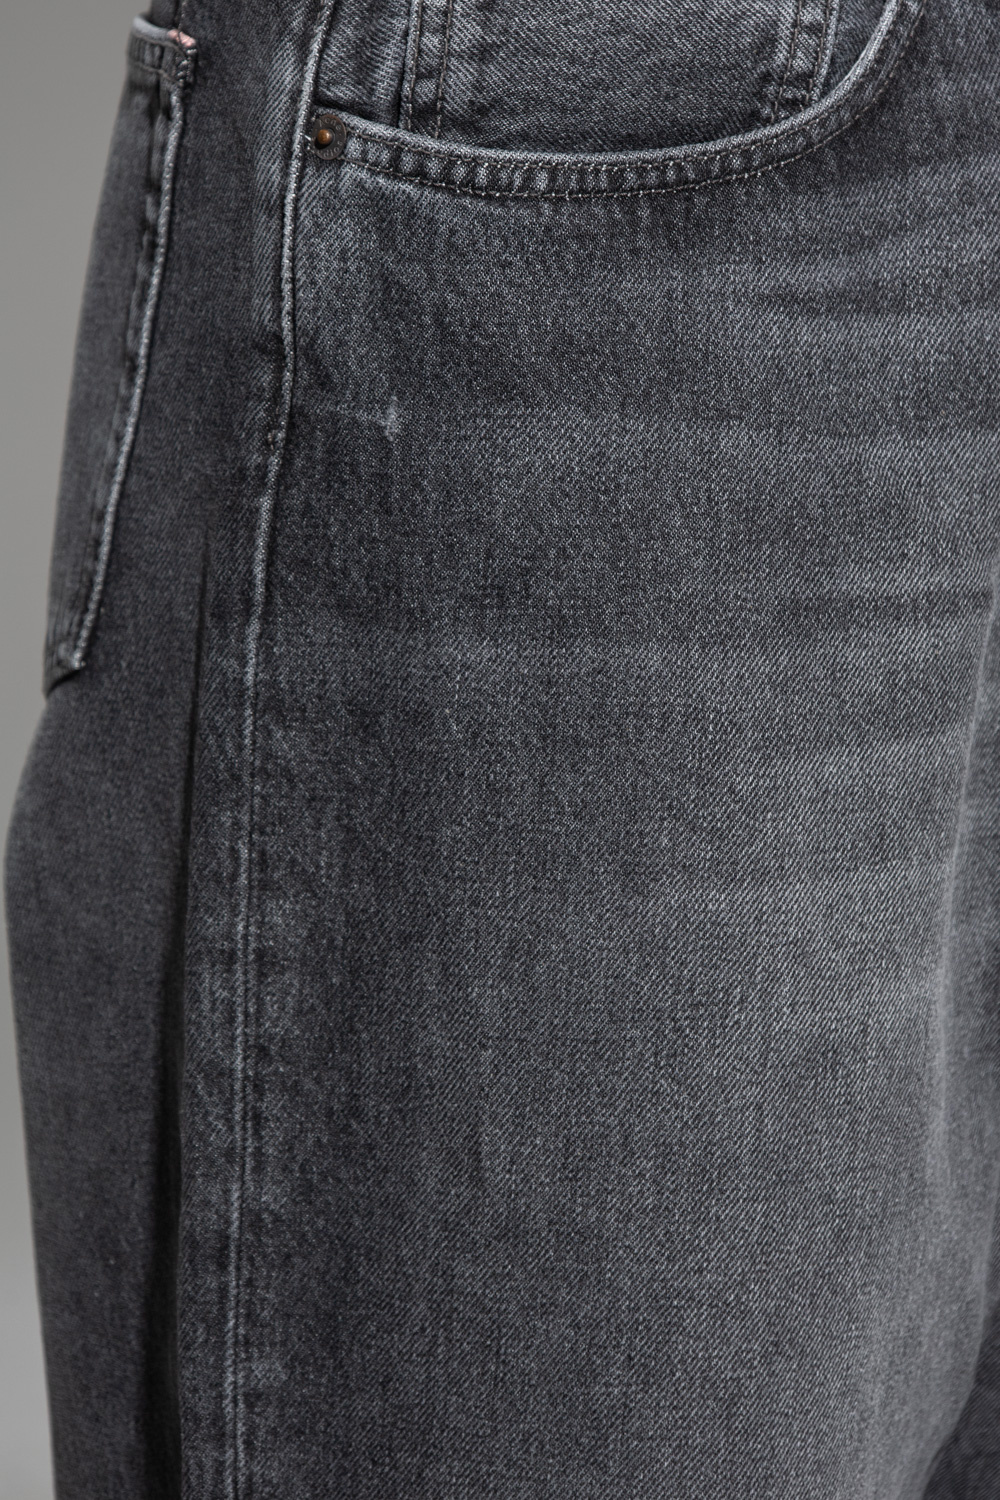 GenesinlifeShops Singapore - john elliott cross thermal track pants item -  Grey Wears Mom Jeans & Veja Sneakers Acne Studios